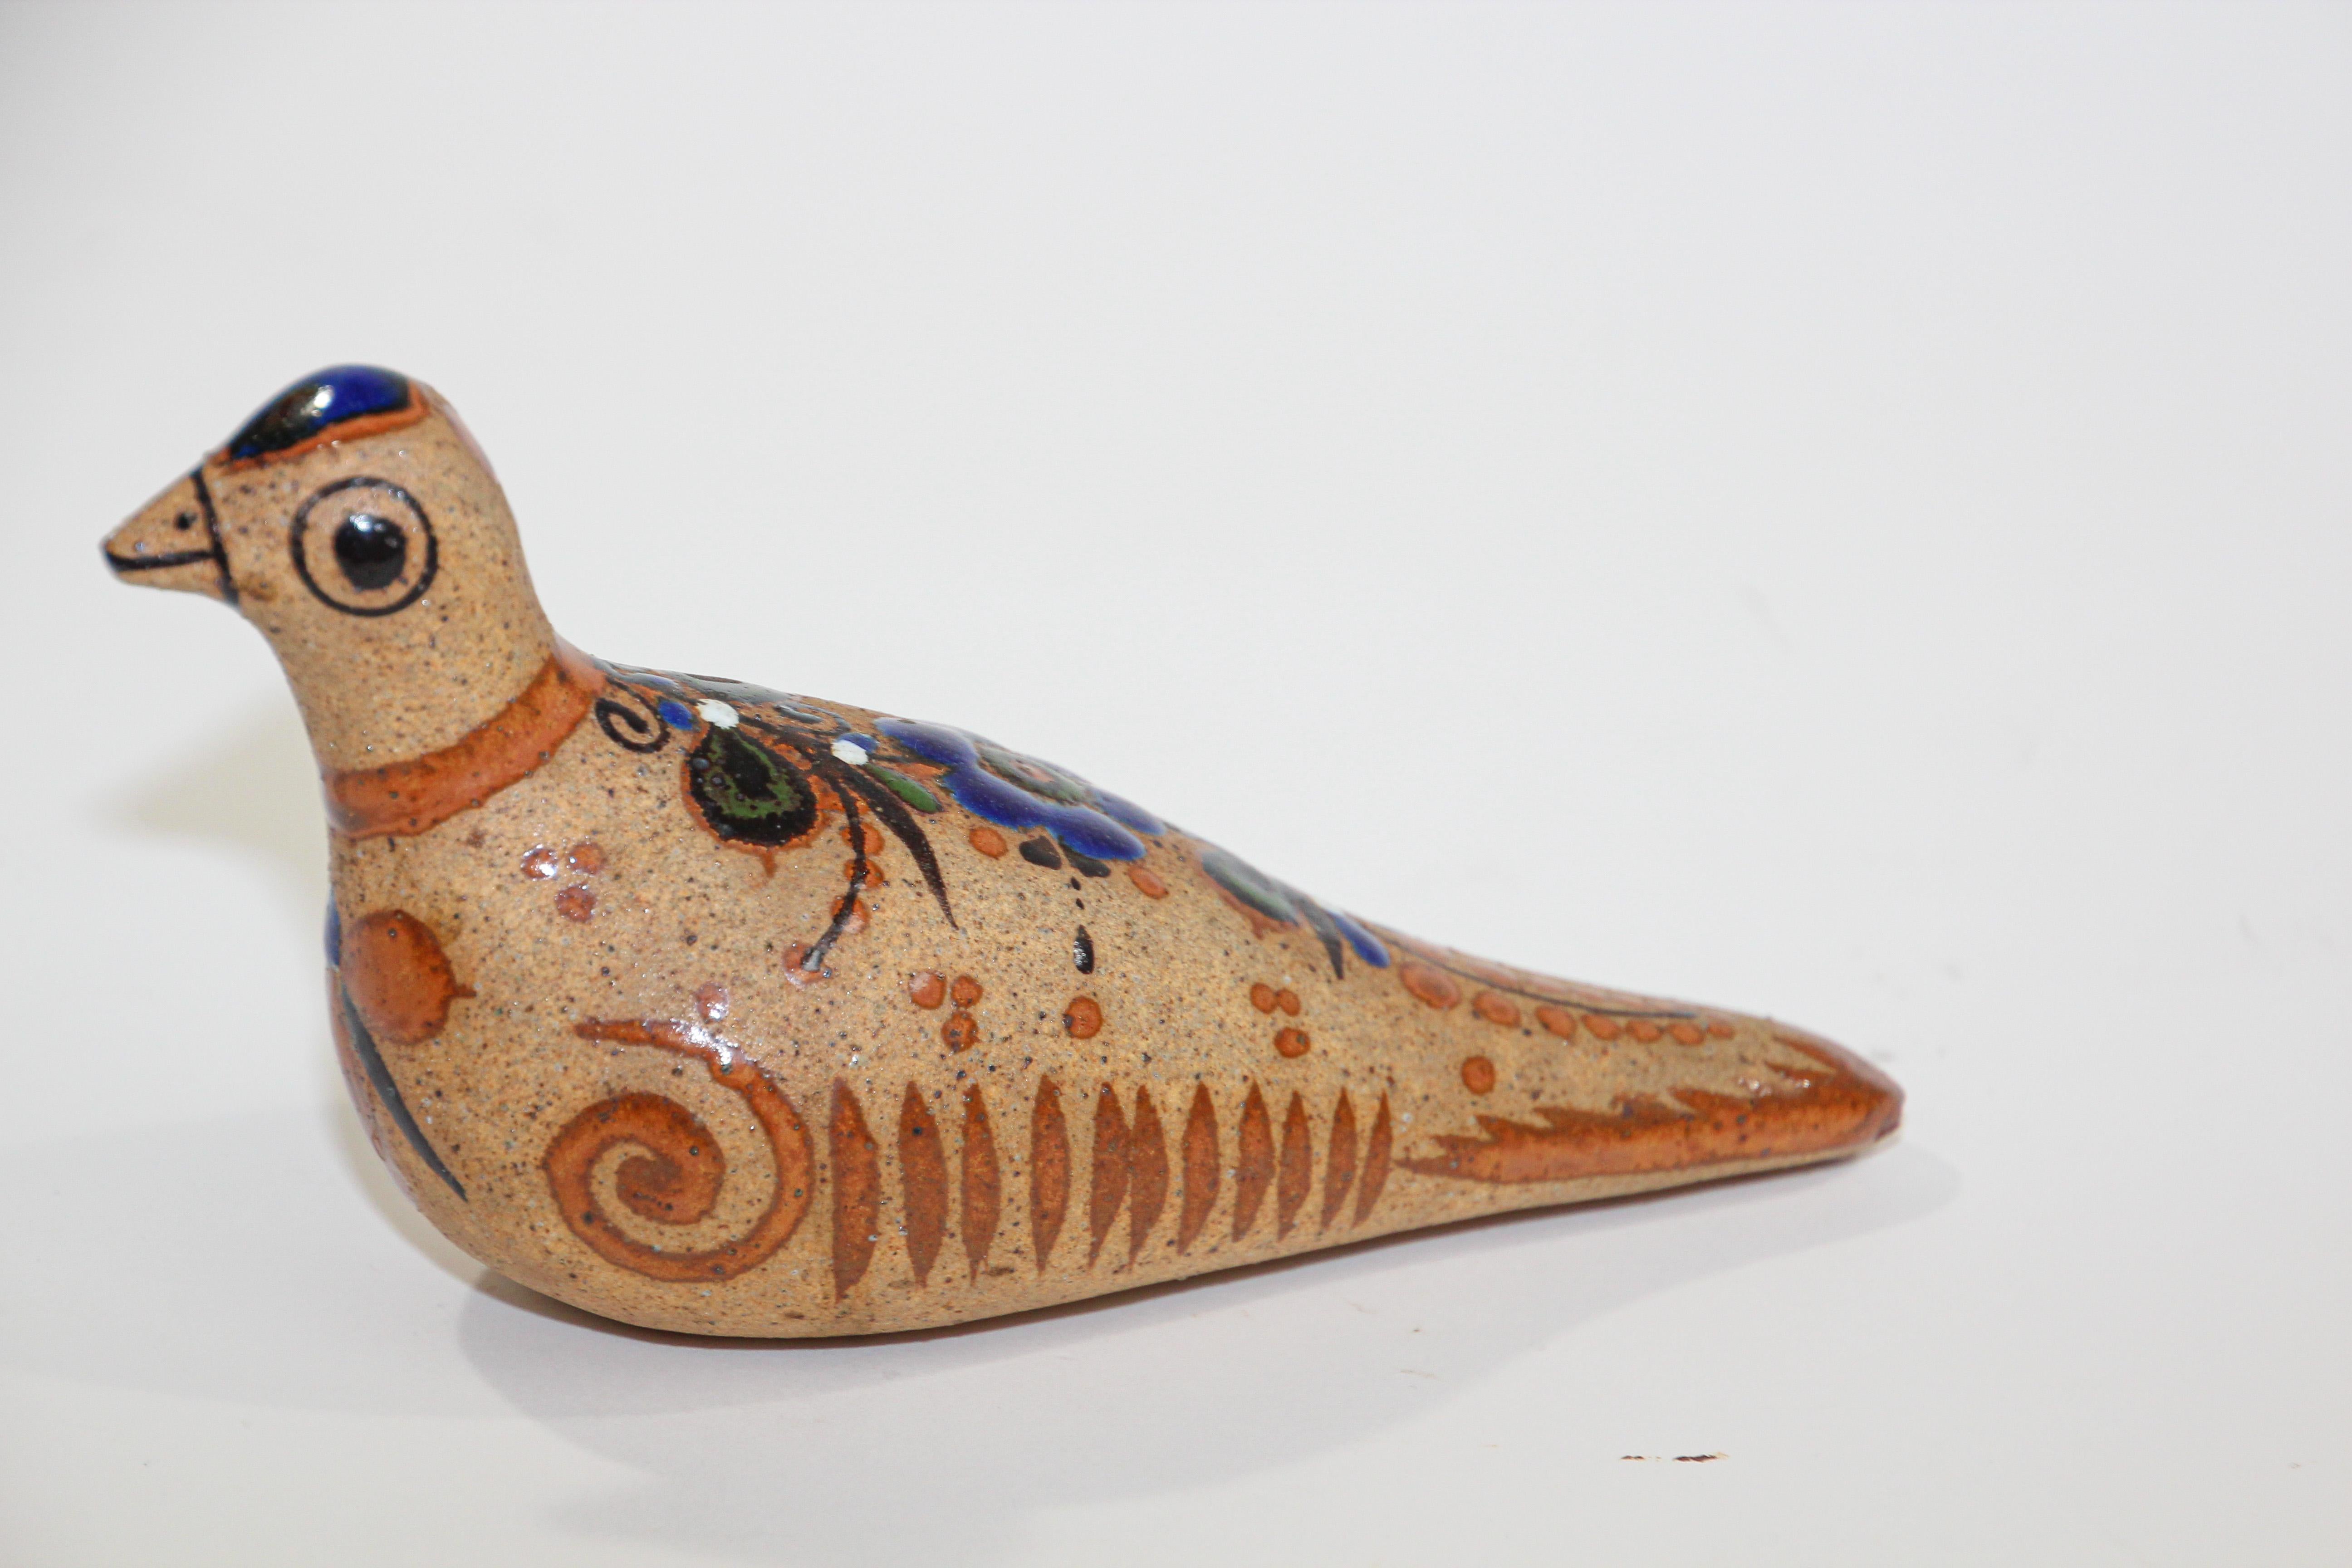 Vintage Mexicain Tonala poterie peint à la main oiseau Folk Art.
Flora de la Cruz Acapulco Gro Mexico céramique oiseau colombe peinte à la main.
Couleurs polychromes aux tons chauds de la terre avec un design abstrait peint à la main sur le